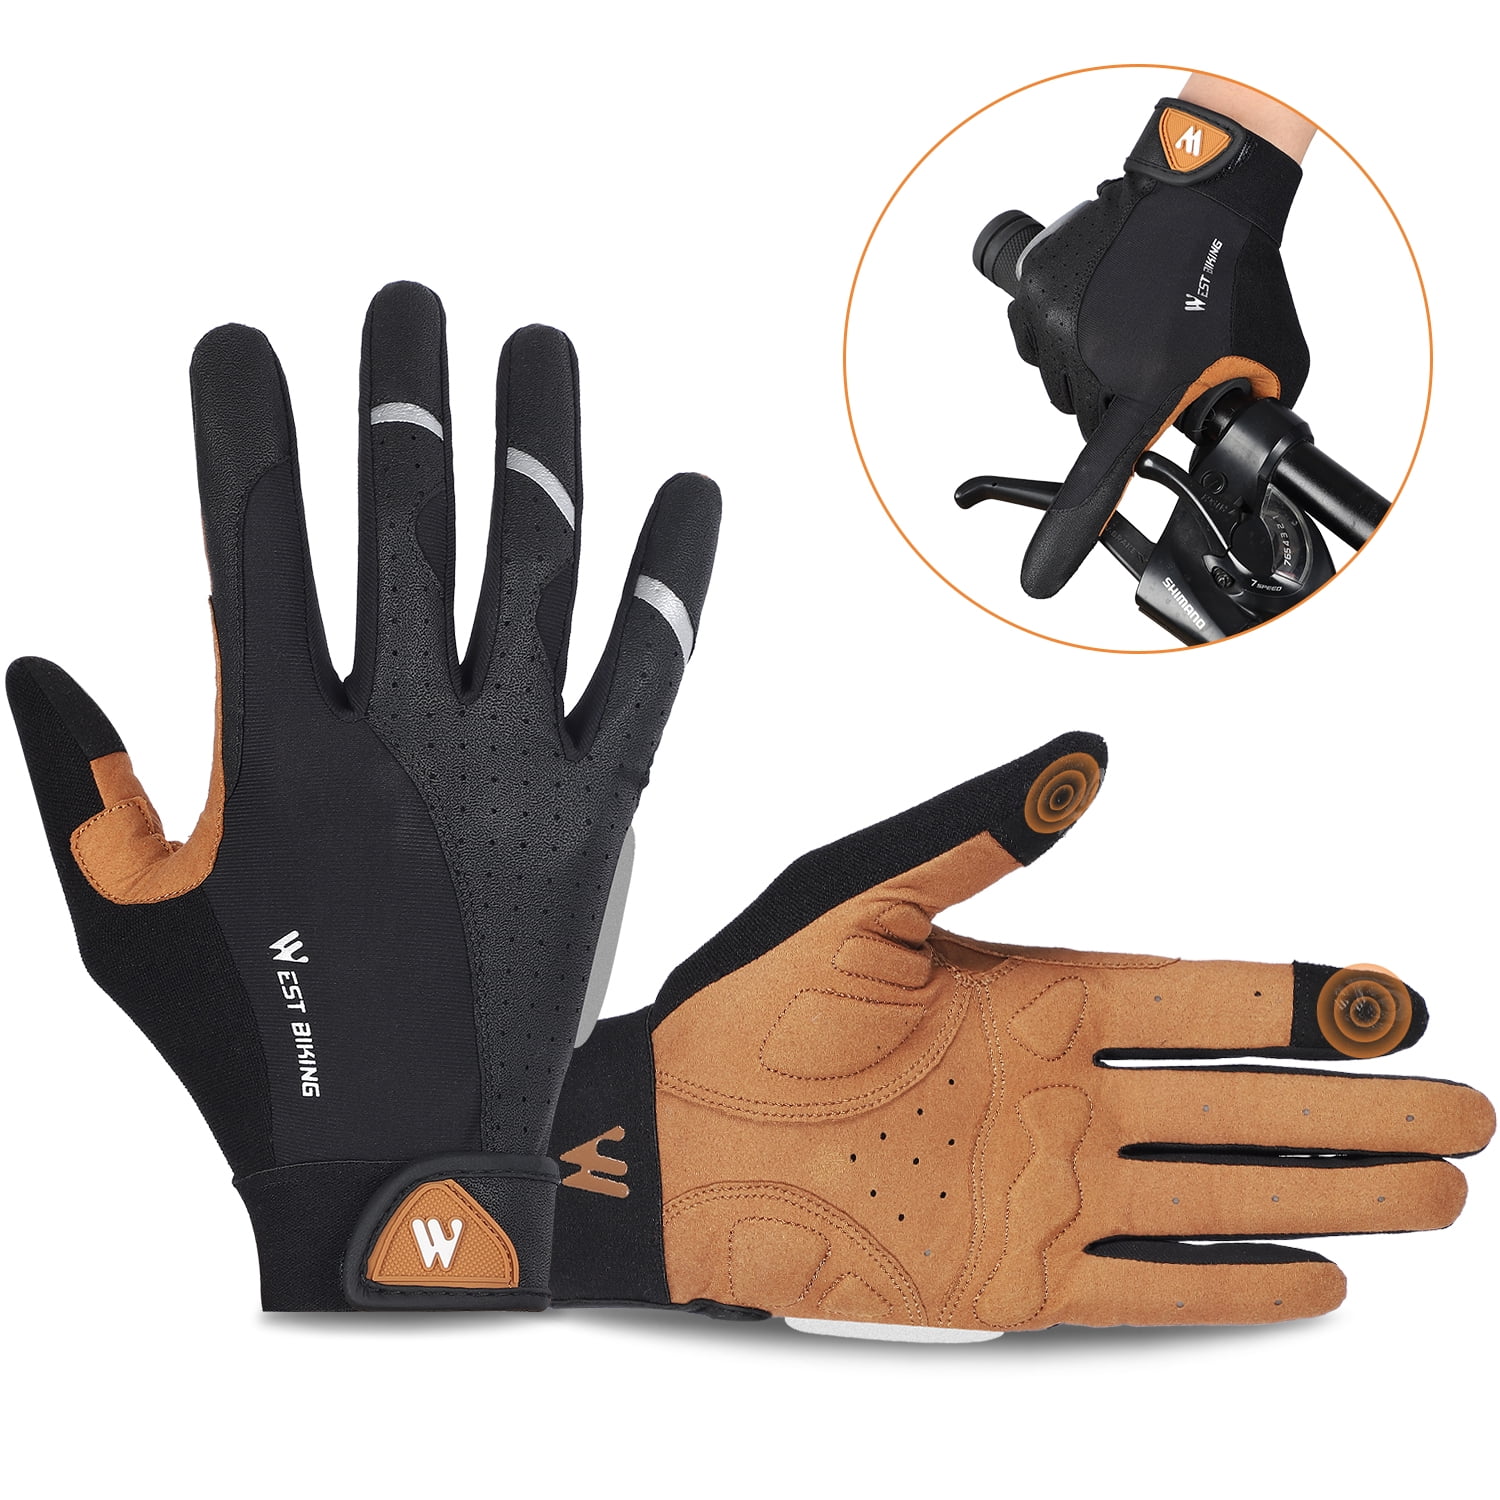 WEST BIKING Cycling Gloves Full Finger Touch Screen Anti Slip Bike Gloves 